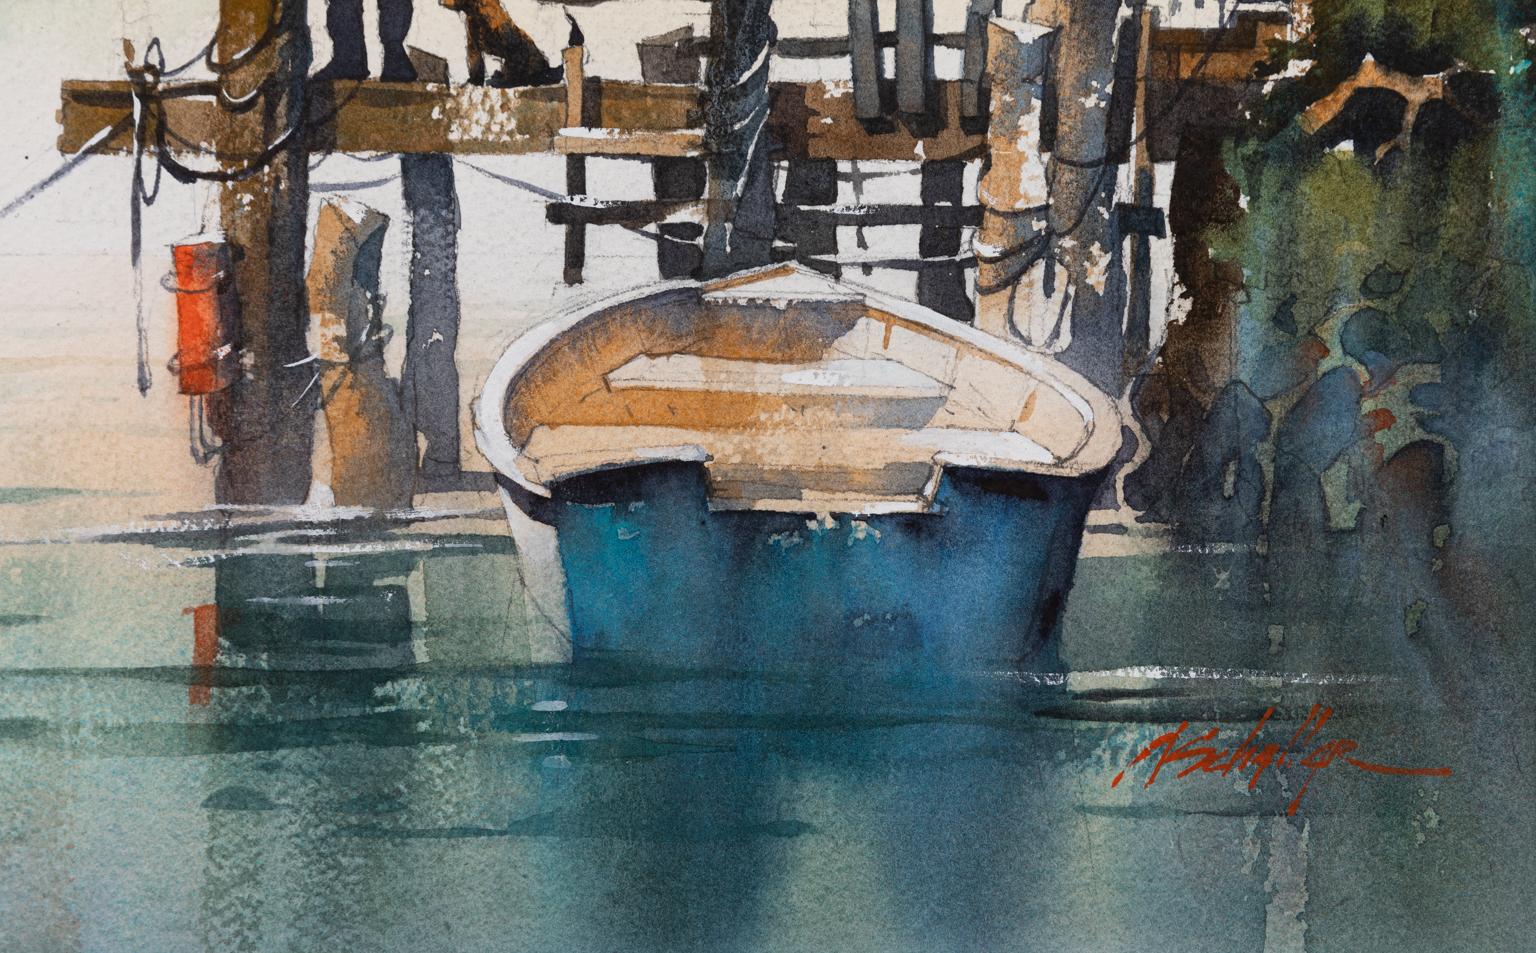 Am Ende des Tages – Aquarell von Booten in Wasser mit Dock  (Zeitgenössisch), Art, von Thomas W. Schaller